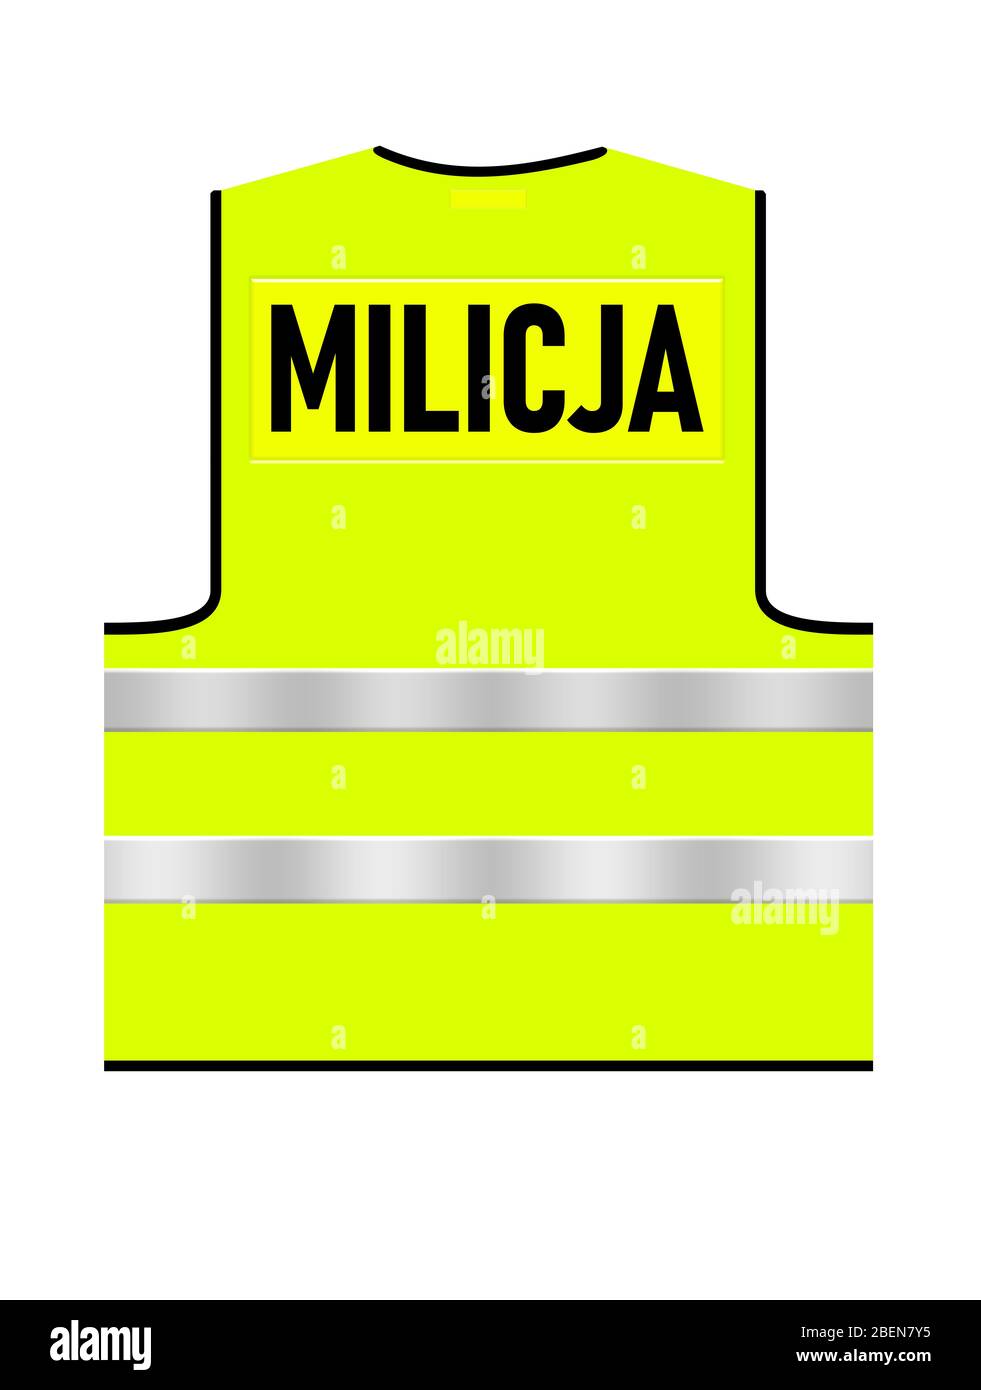 Vert vif – jaune trafic polonais Milicja maillot de corps sur fond blanc isolé. Vue arrière. Illustration du concept. Logo en texte noir. Banque D'Images